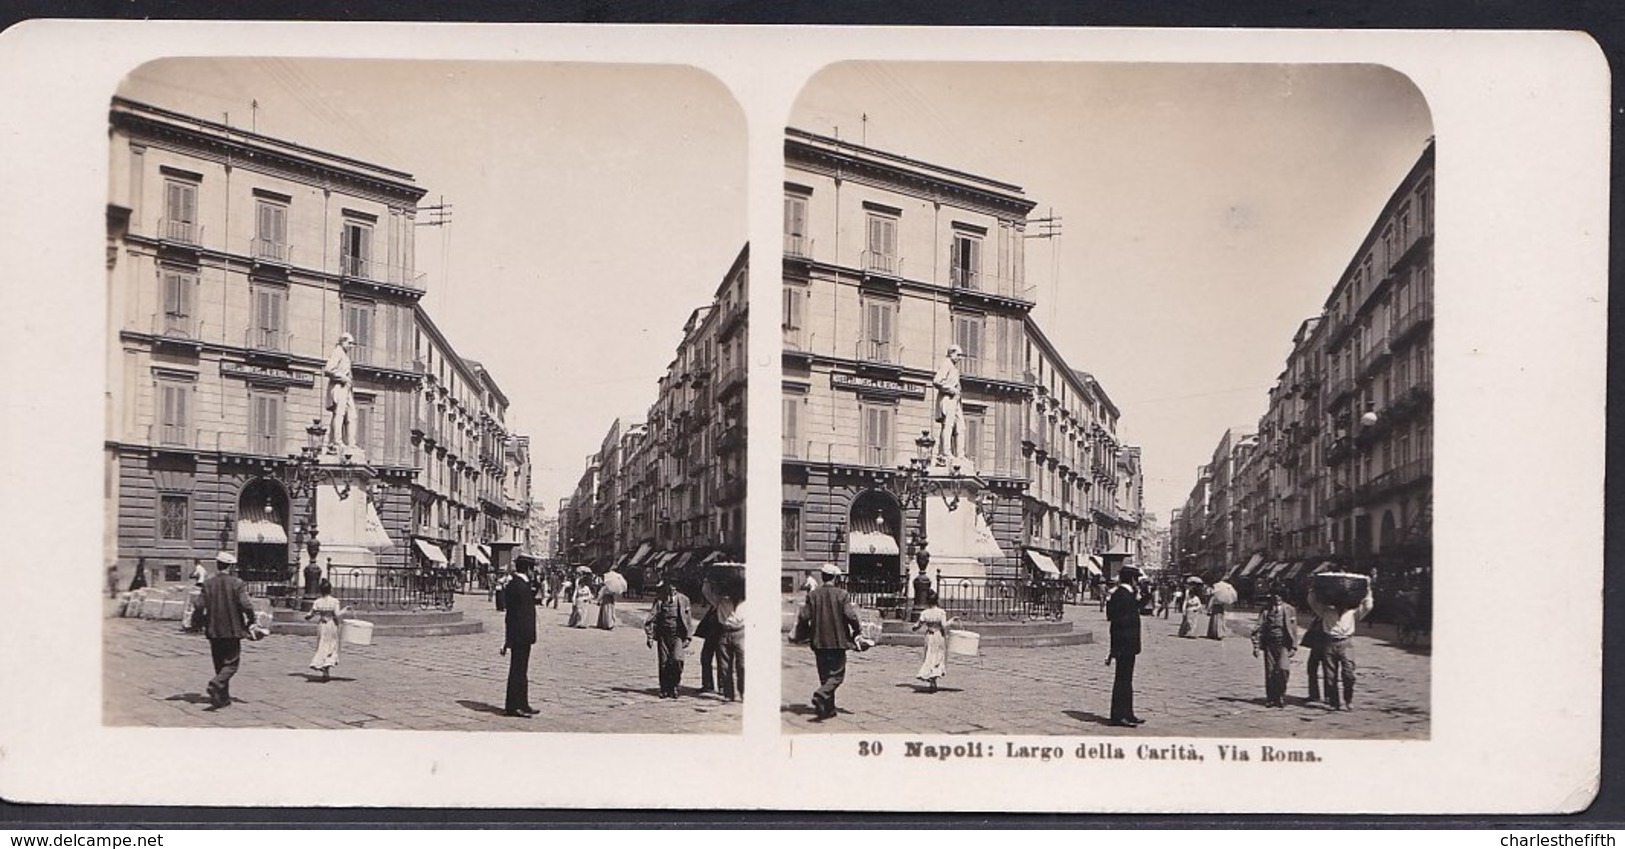 1906 VECCHIA FOTO STEREO ITALIA - CAMPANIA - ** NAPOLI ; LARGO DELLA CARITA - VIA ROMA ** RARE - Stereoscopic